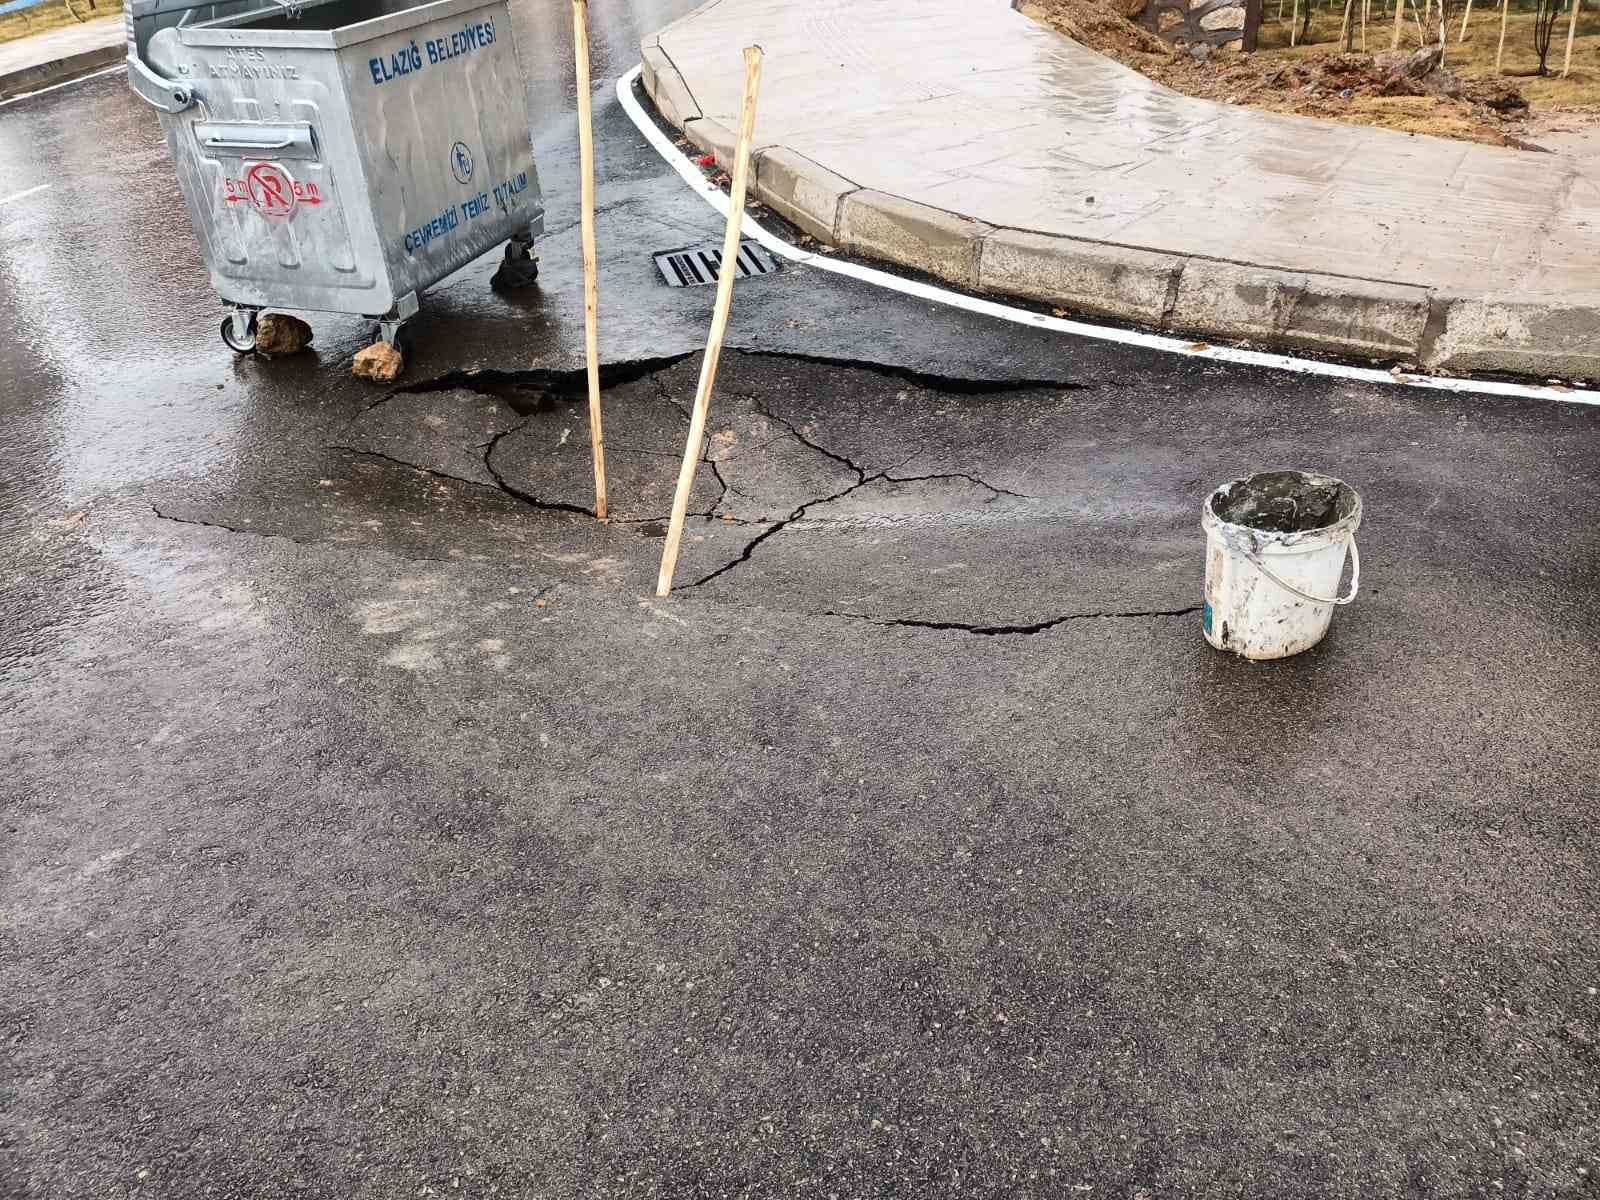 Elazığ’da aşırı yağışlar nedeniyle yolda çökme meydana geldi #elazig